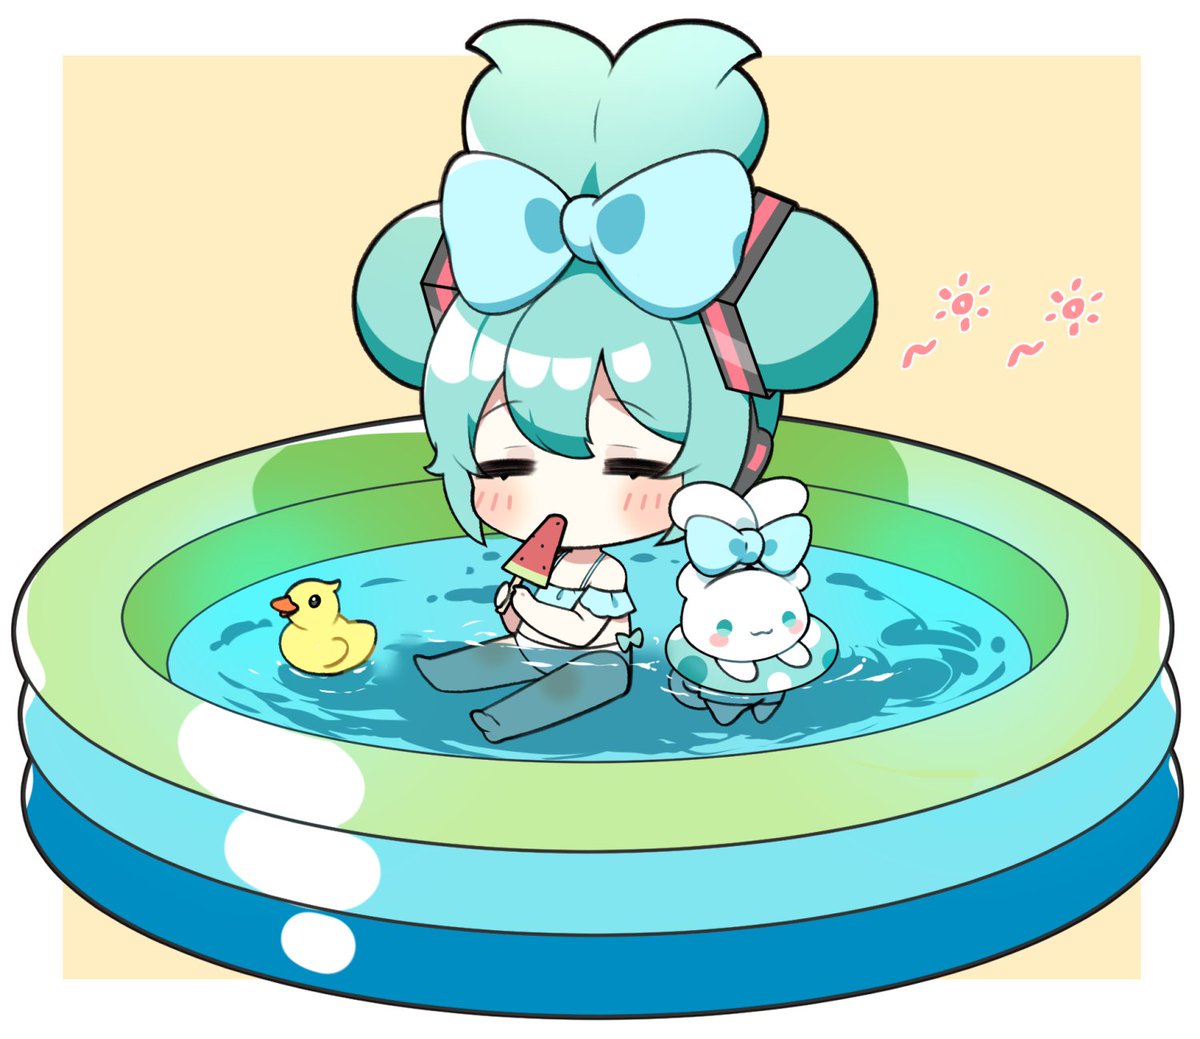 hatsune miku 1girl wading pool food chibi bow swimsuit popsicle  illustration images